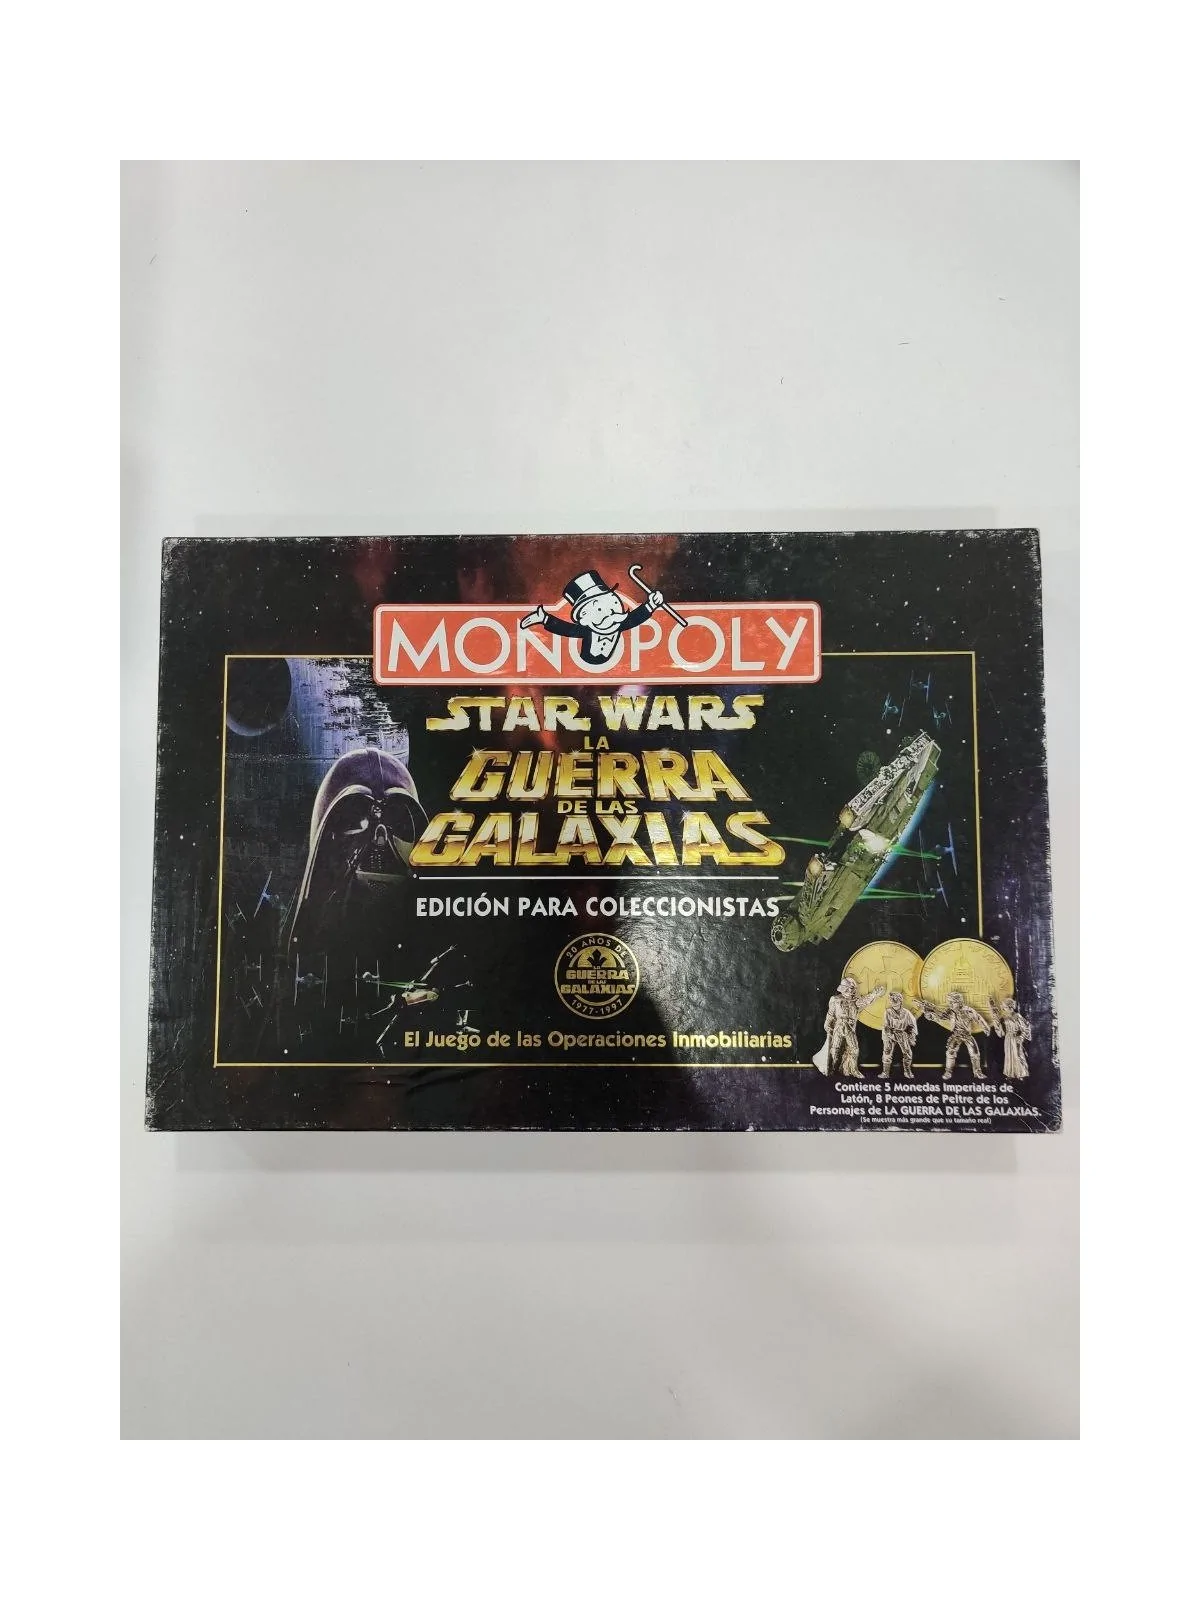 Comprar Monopoly Star Wars [SEGUNDA MANO] barato al mejor precio 30,00